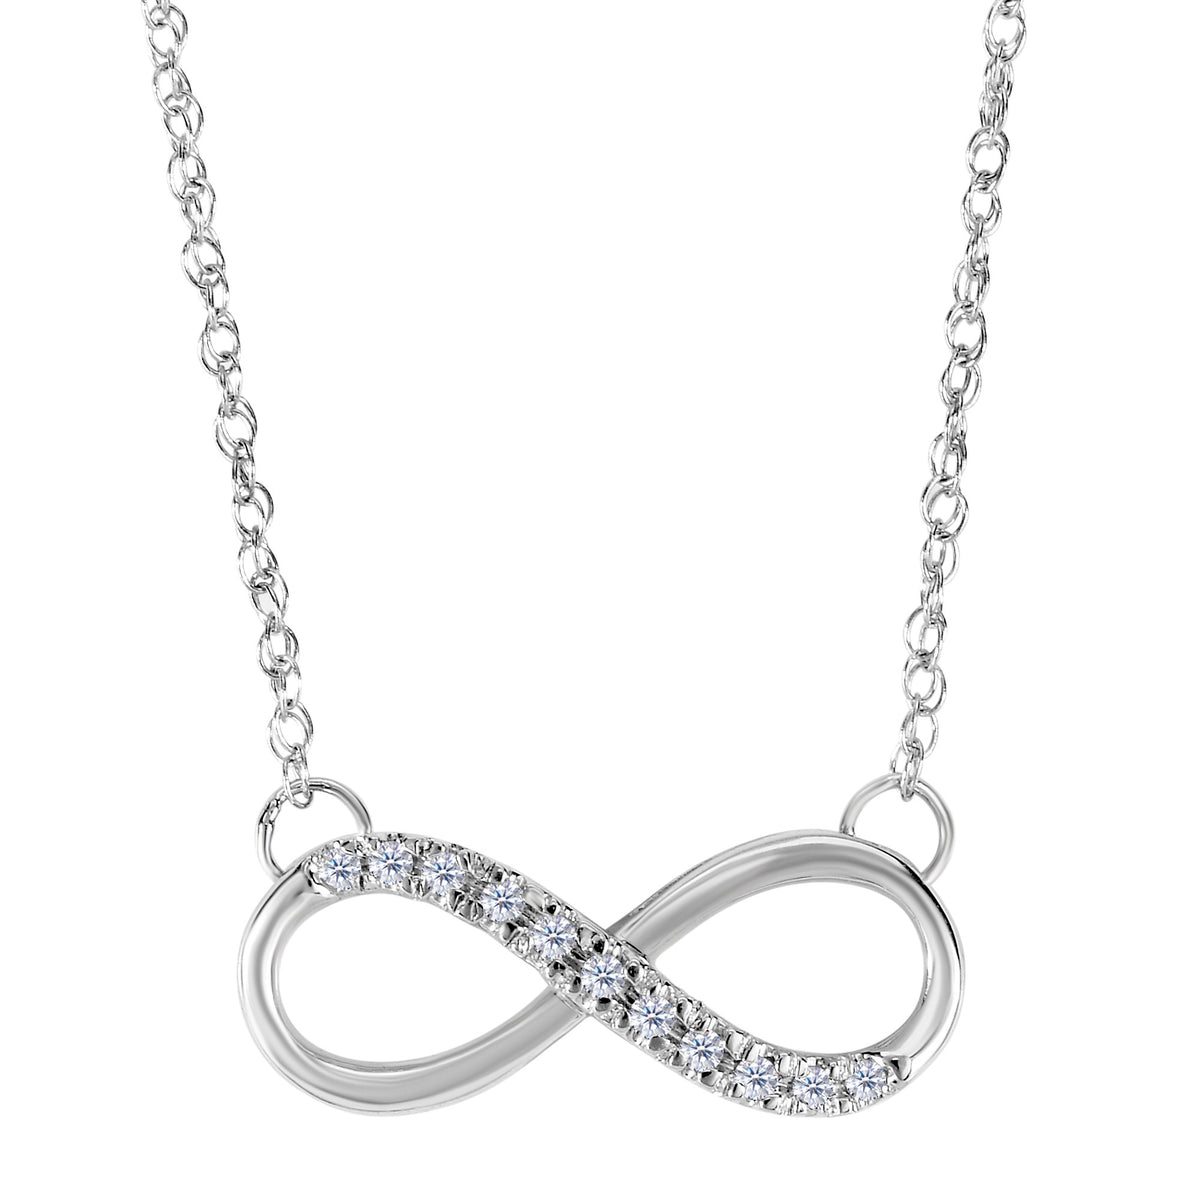 Collar infinito de oro blanco de 14 quilates con diamantes de 0,10 quilates: joyería fina de diseño de 18 pulgadas para hombres y mujeres